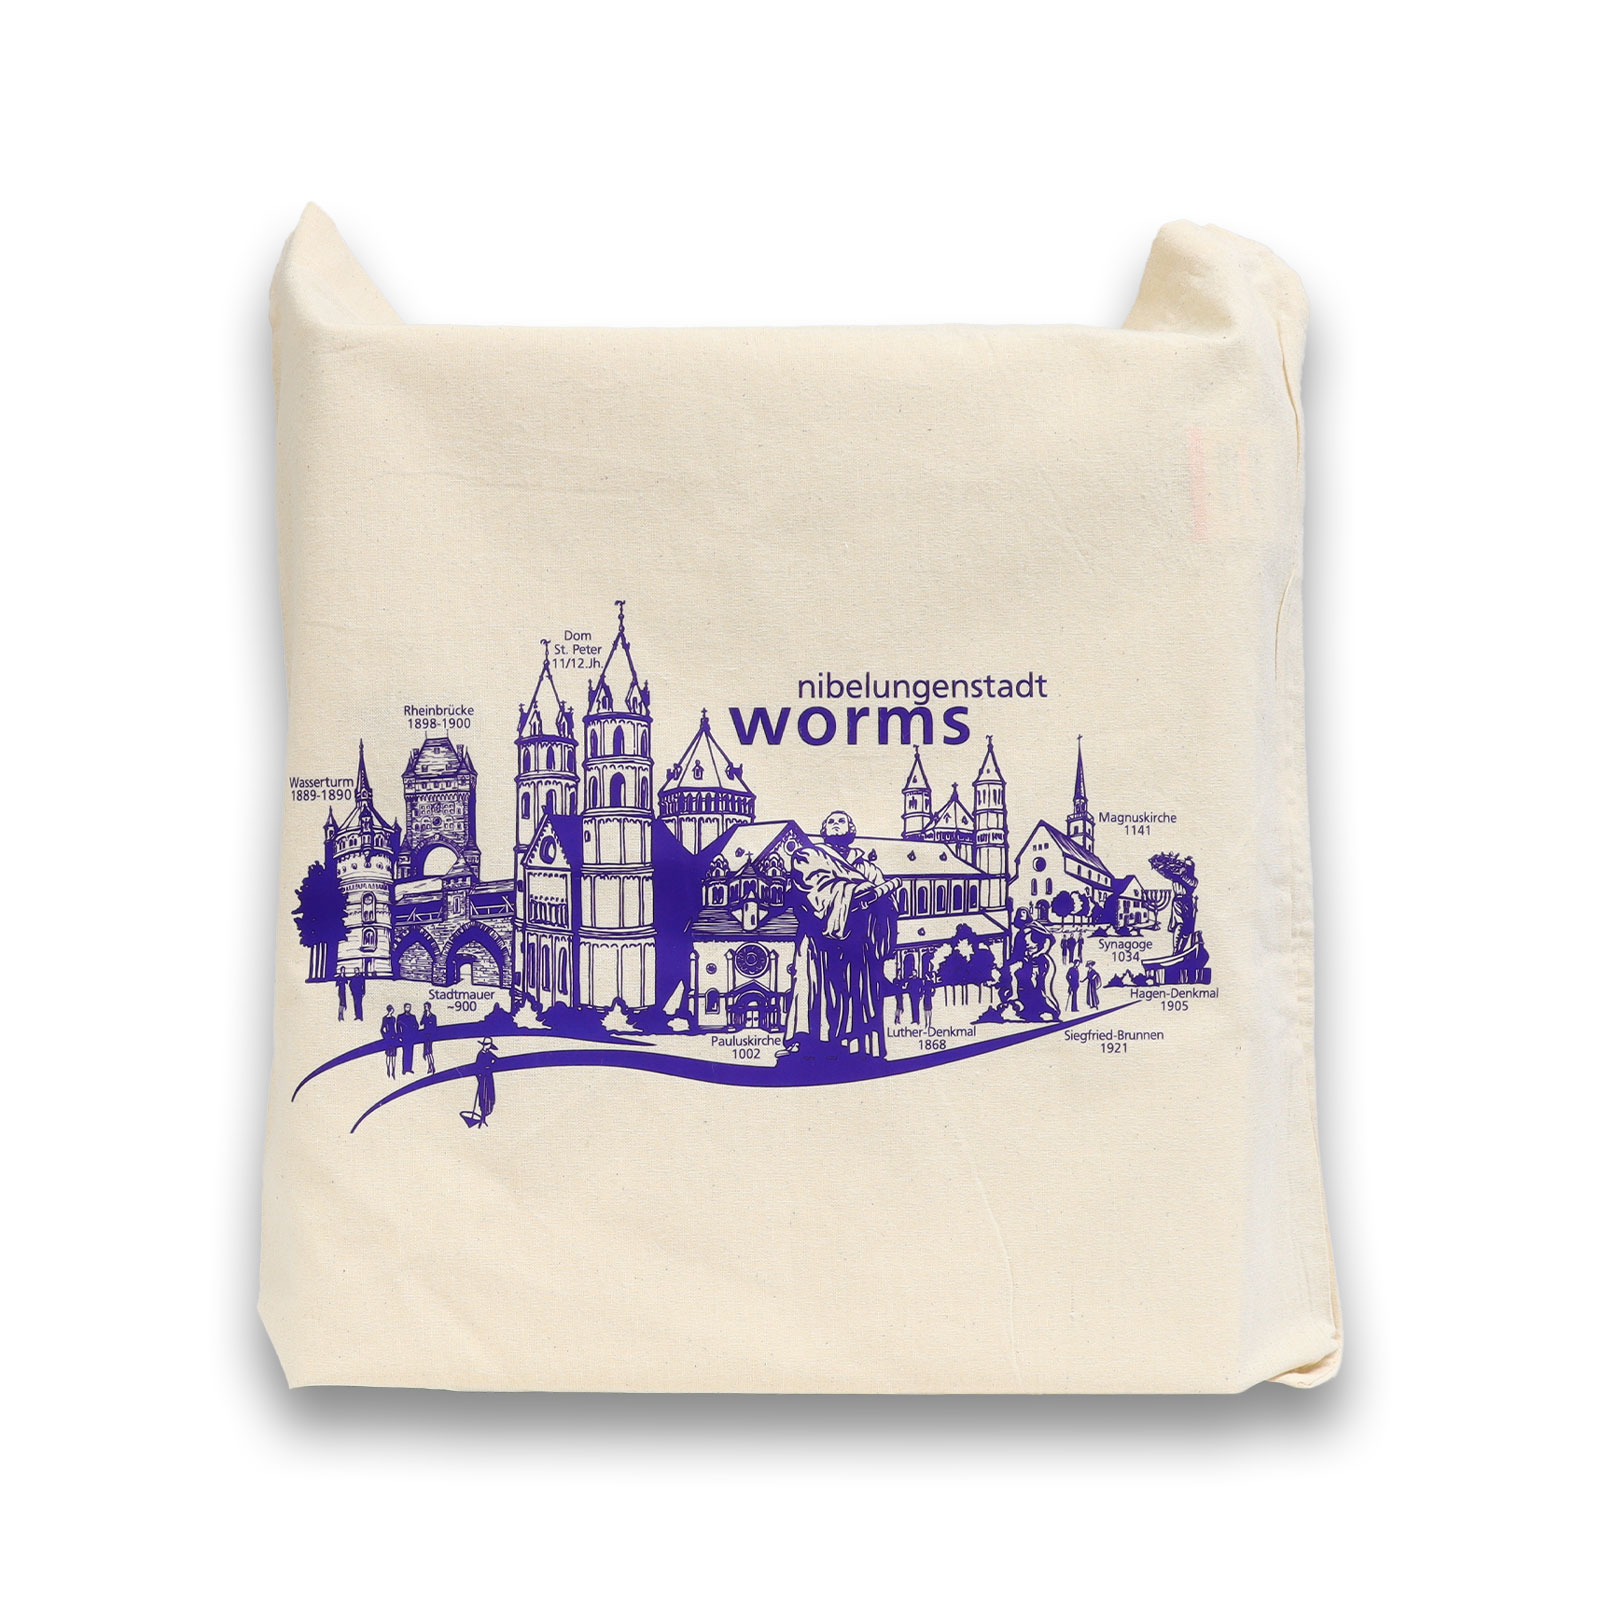 Stofftasche mit Worms Aufdruck von der Touristik Information.